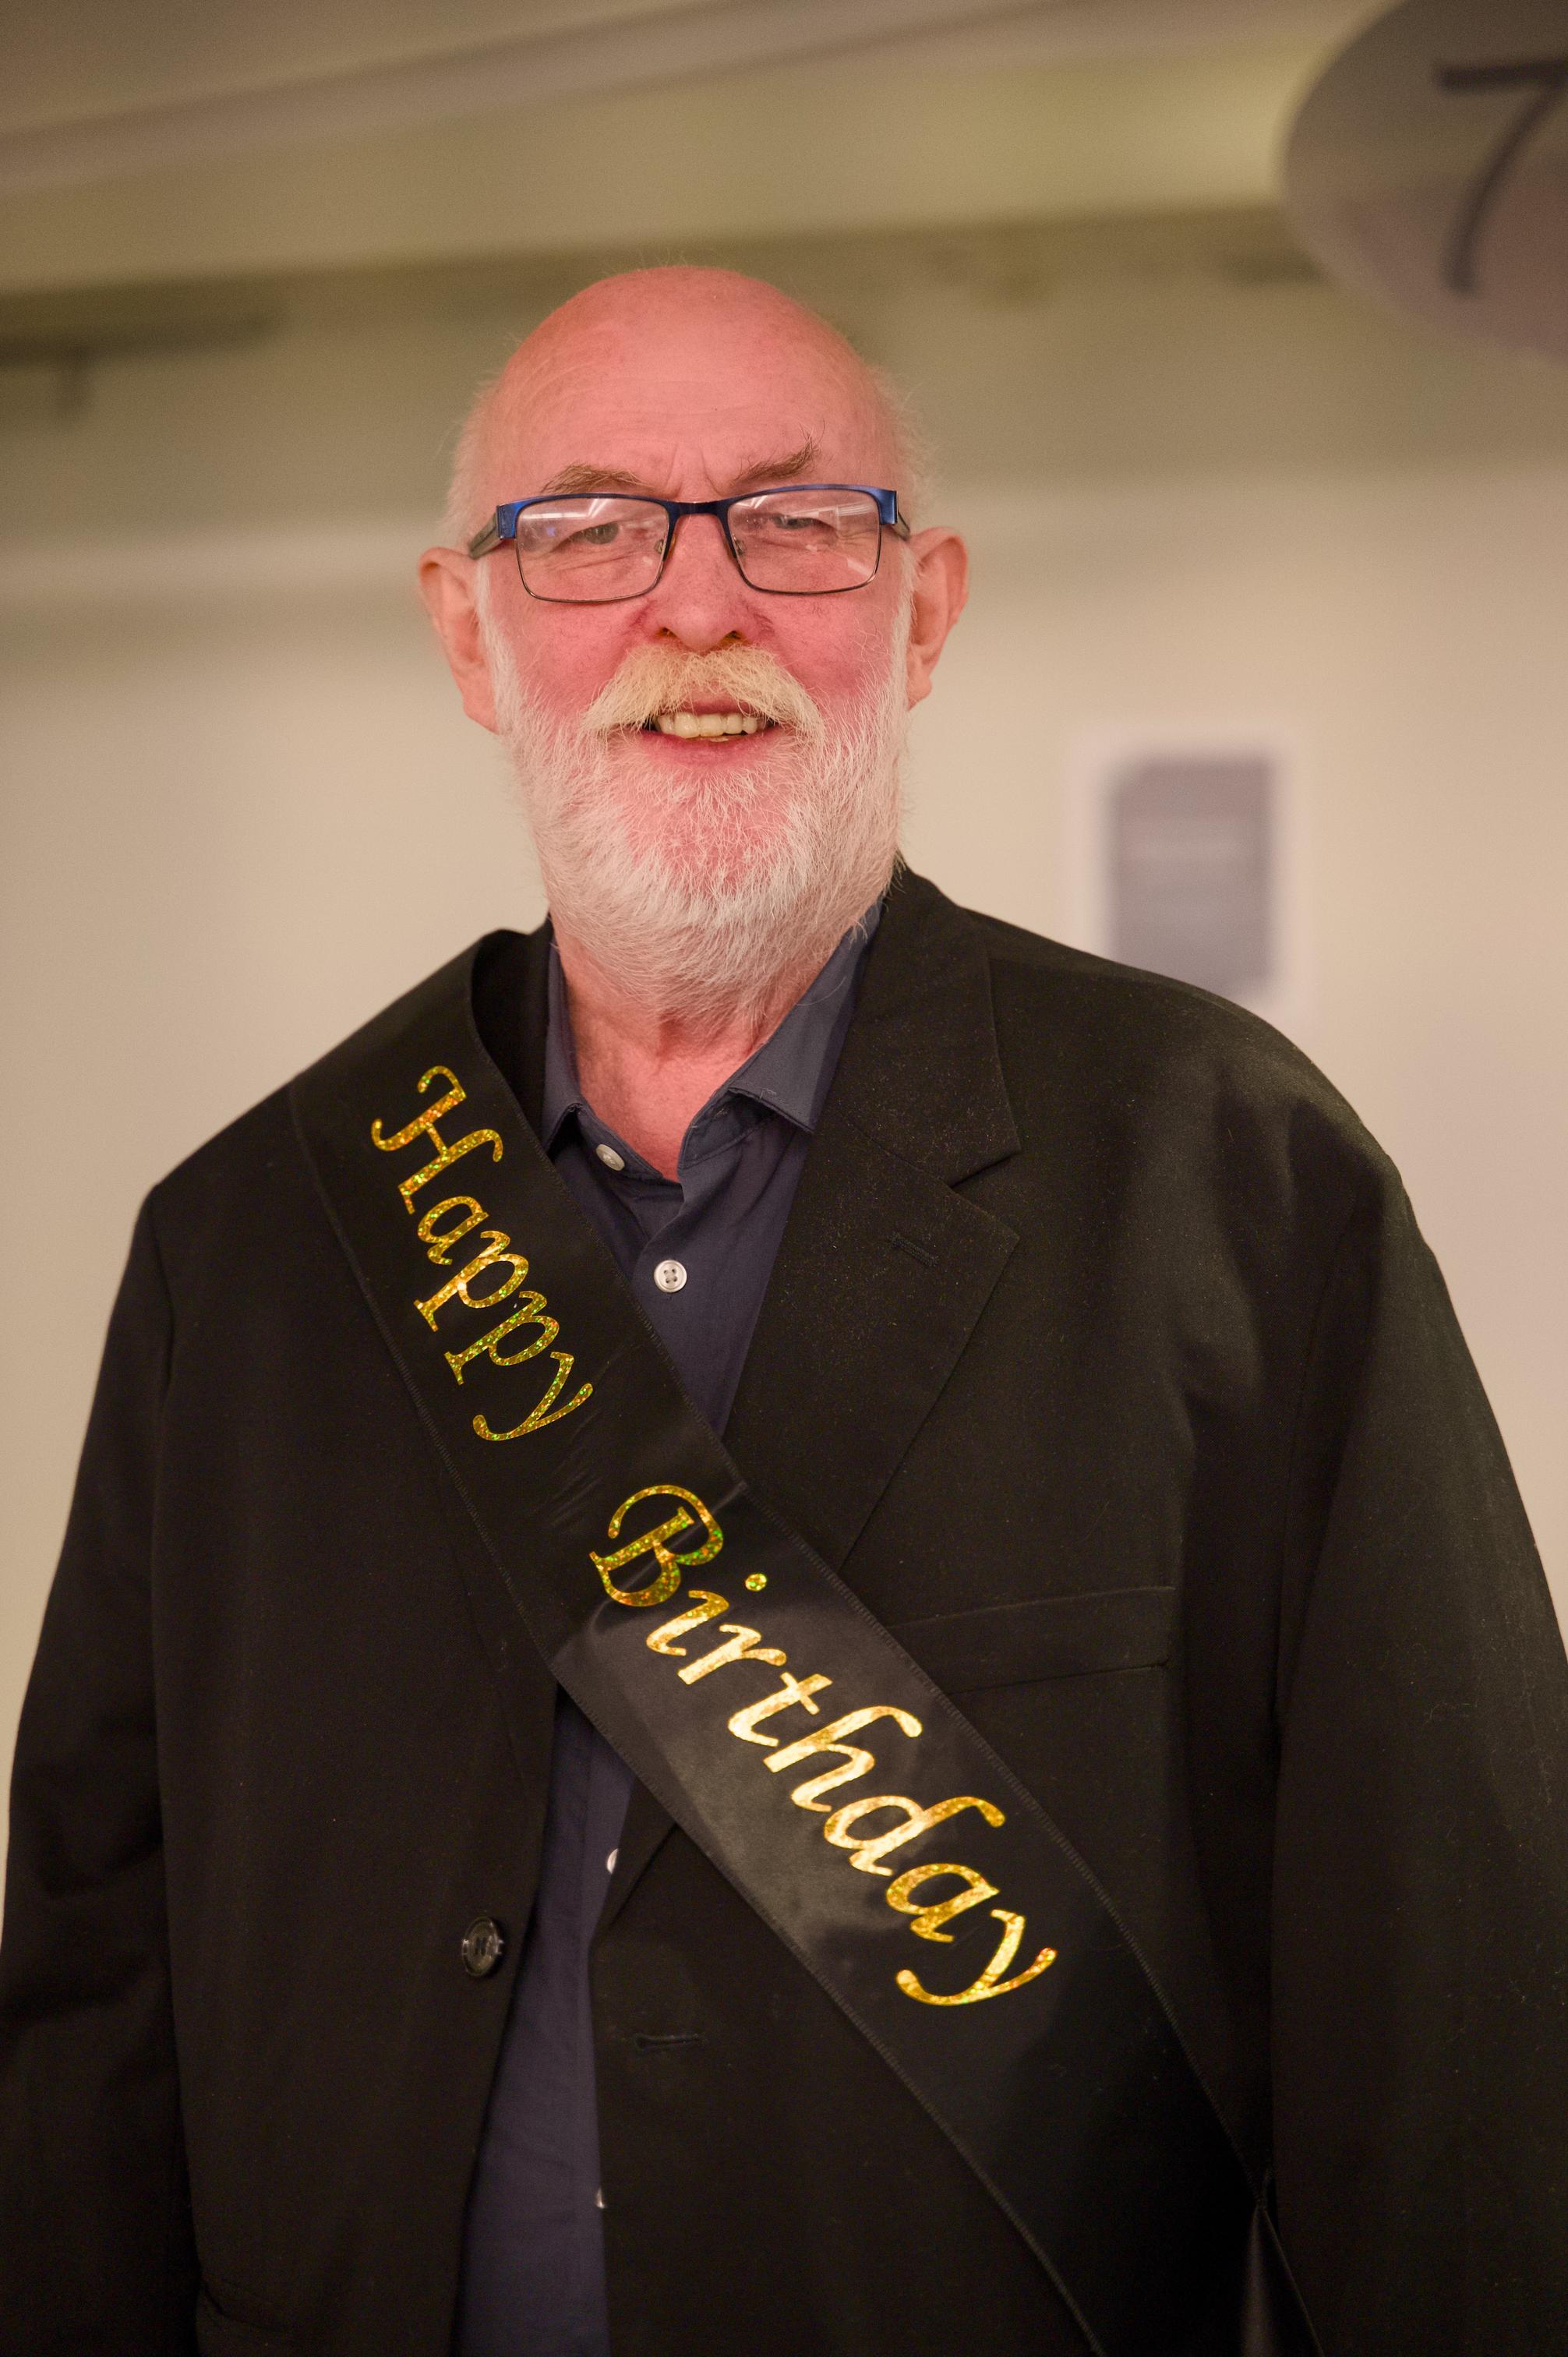 Alf Steinar smiler med eit svart band med gullskrift der det står "gratulerer med dagen" på engelsk.